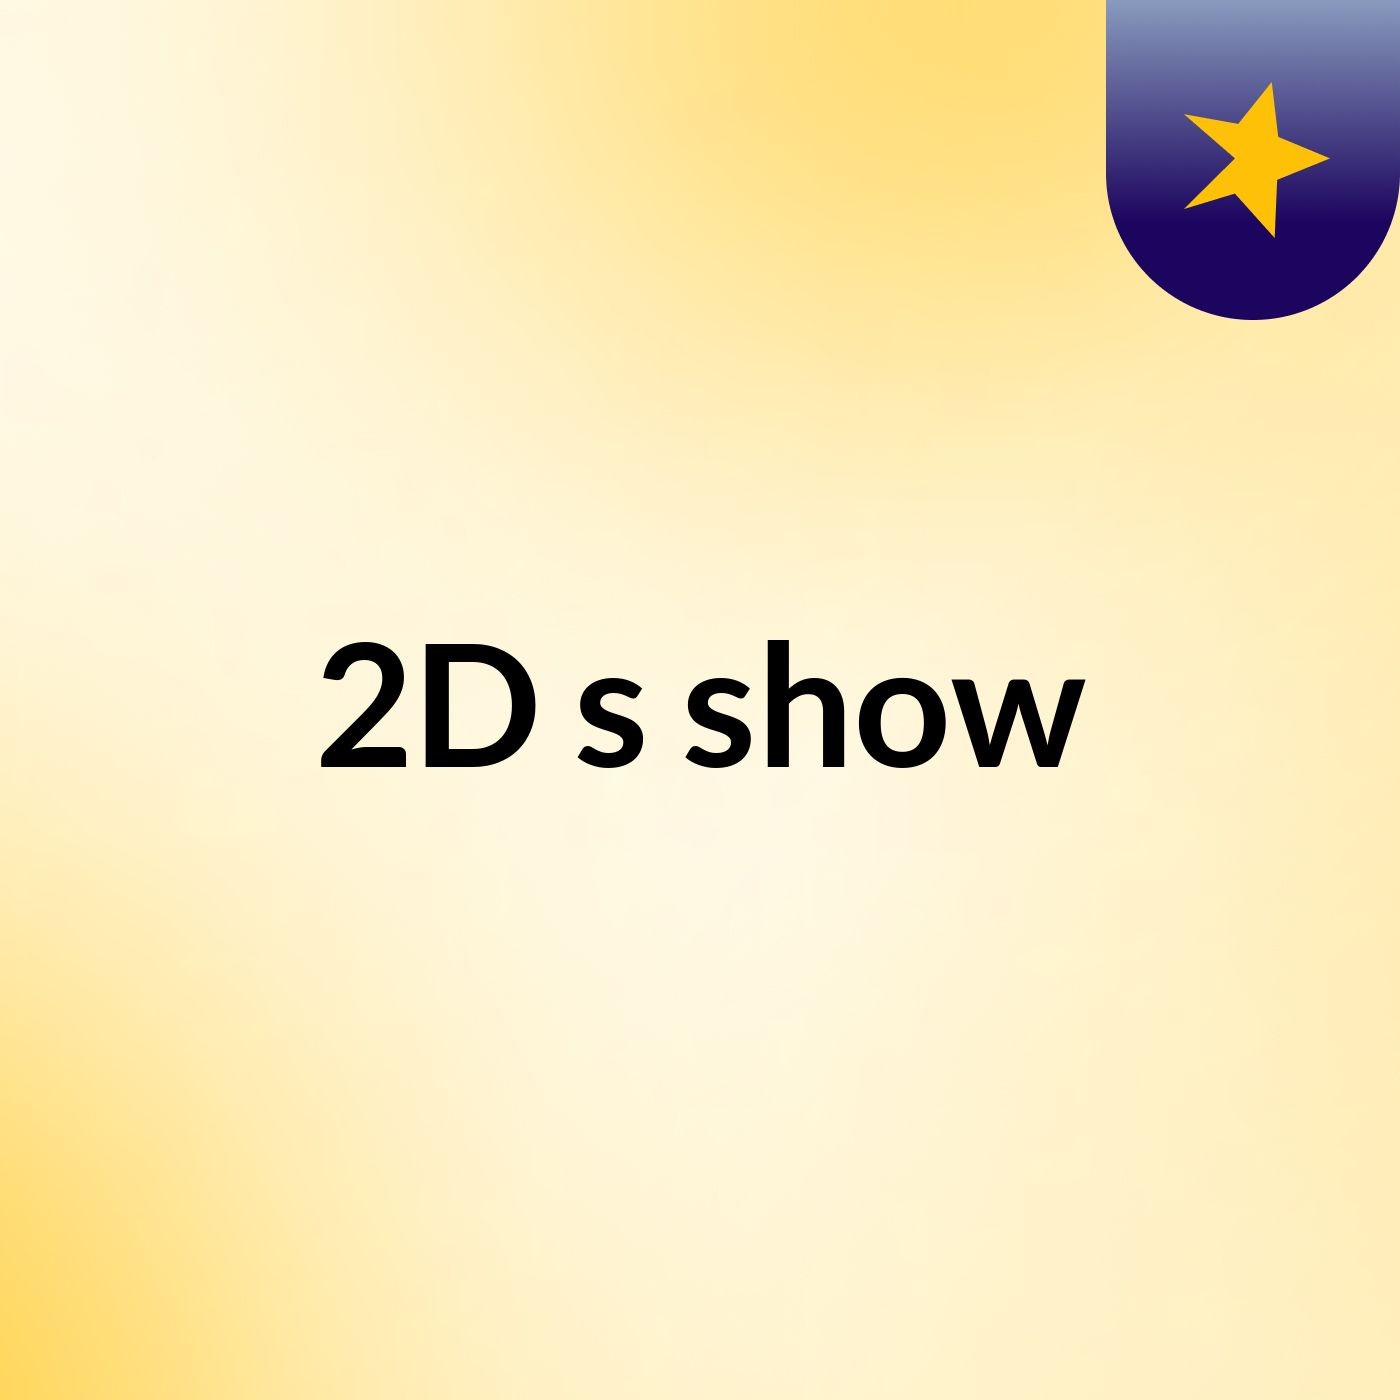 2D's show